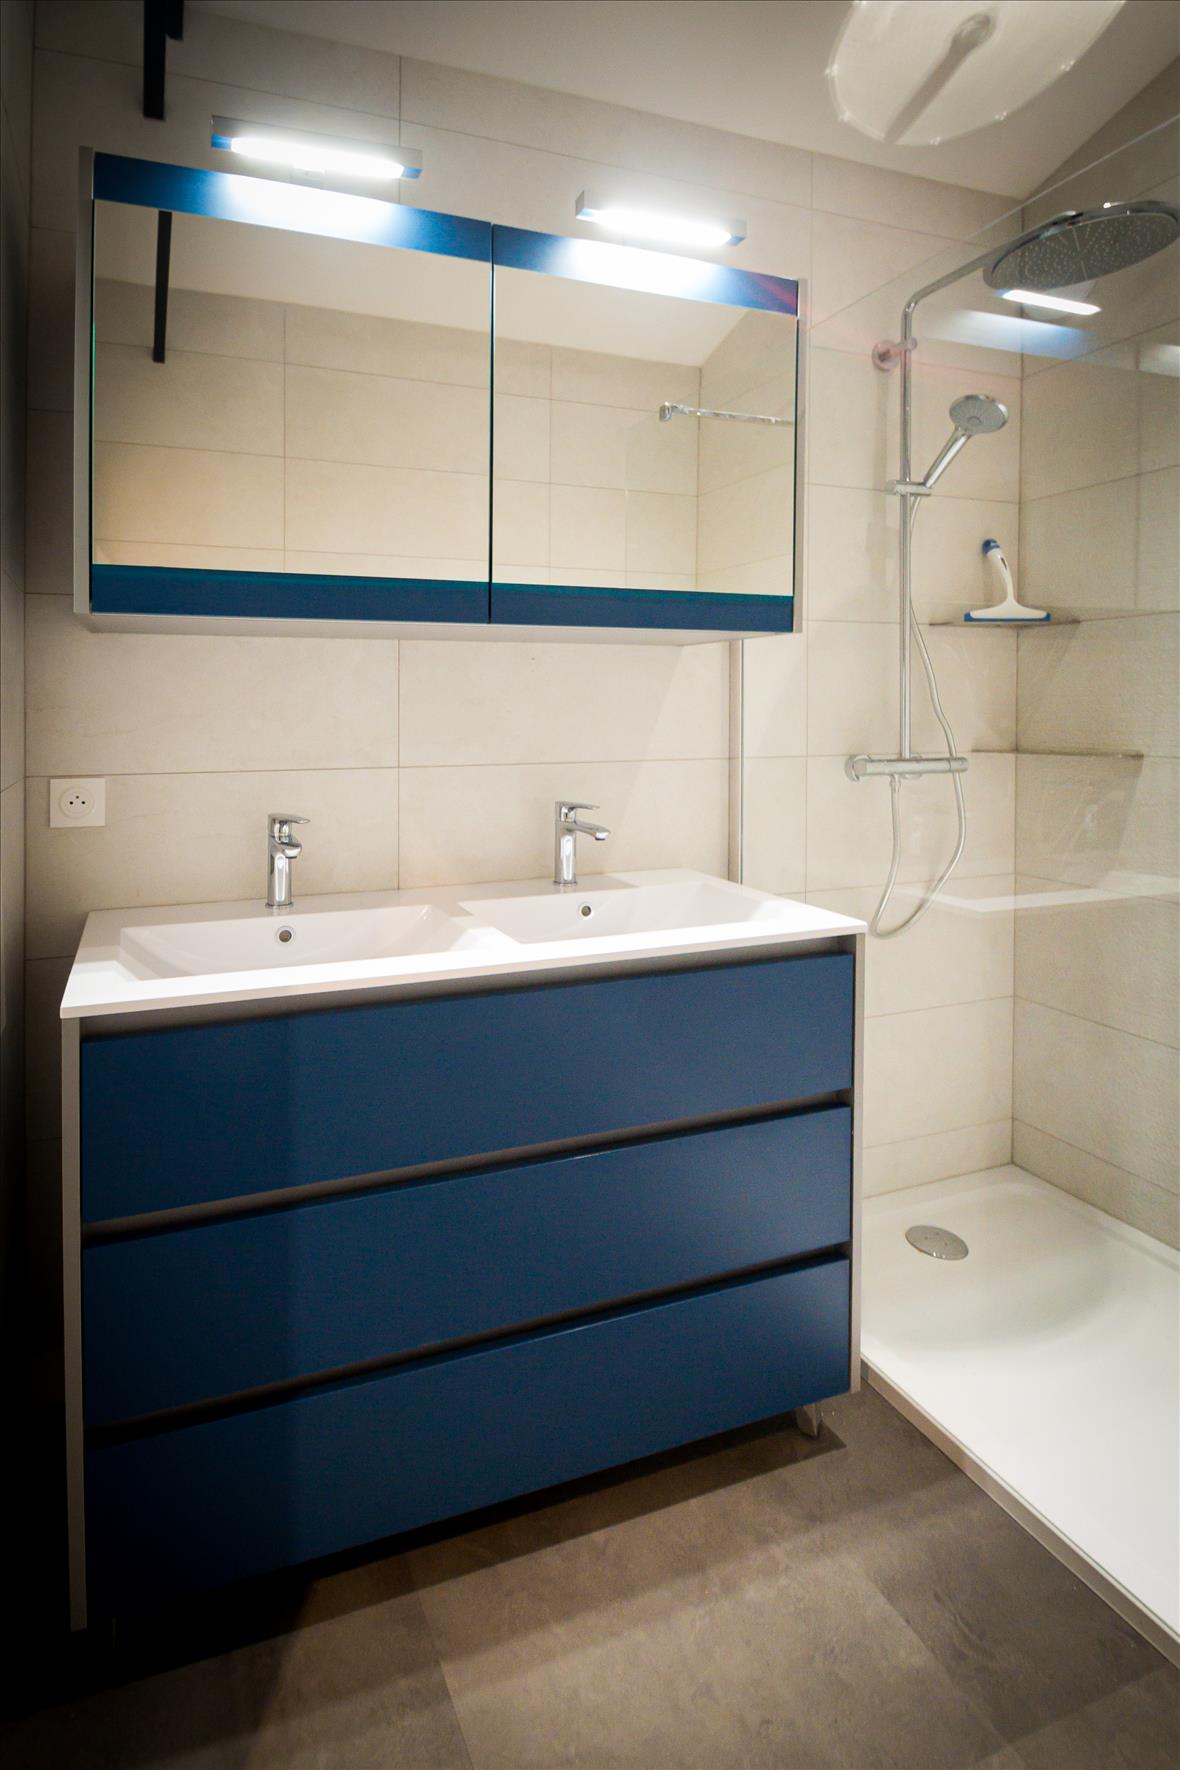 Salle de bains de style contemporain à Châtellerault | Raison Home - 6